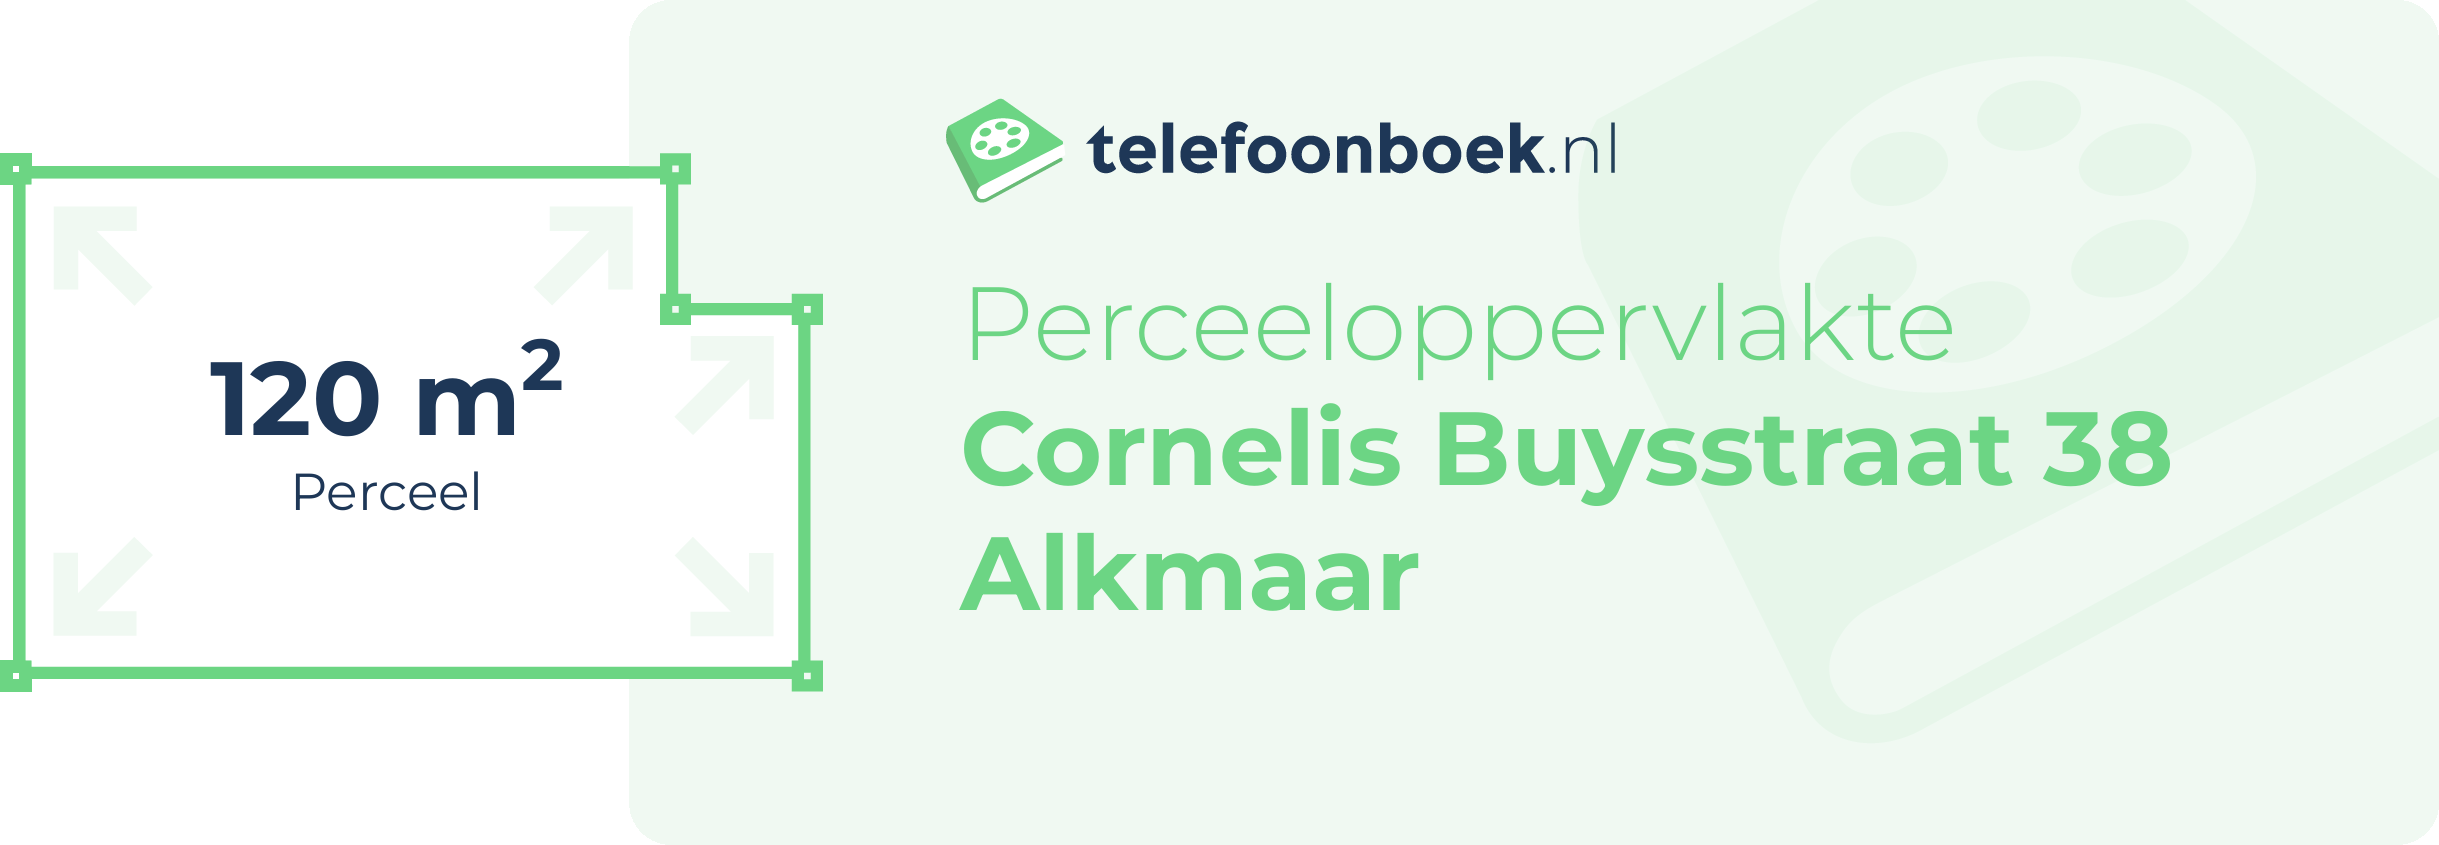 Perceeloppervlakte Cornelis Buysstraat 38 Alkmaar